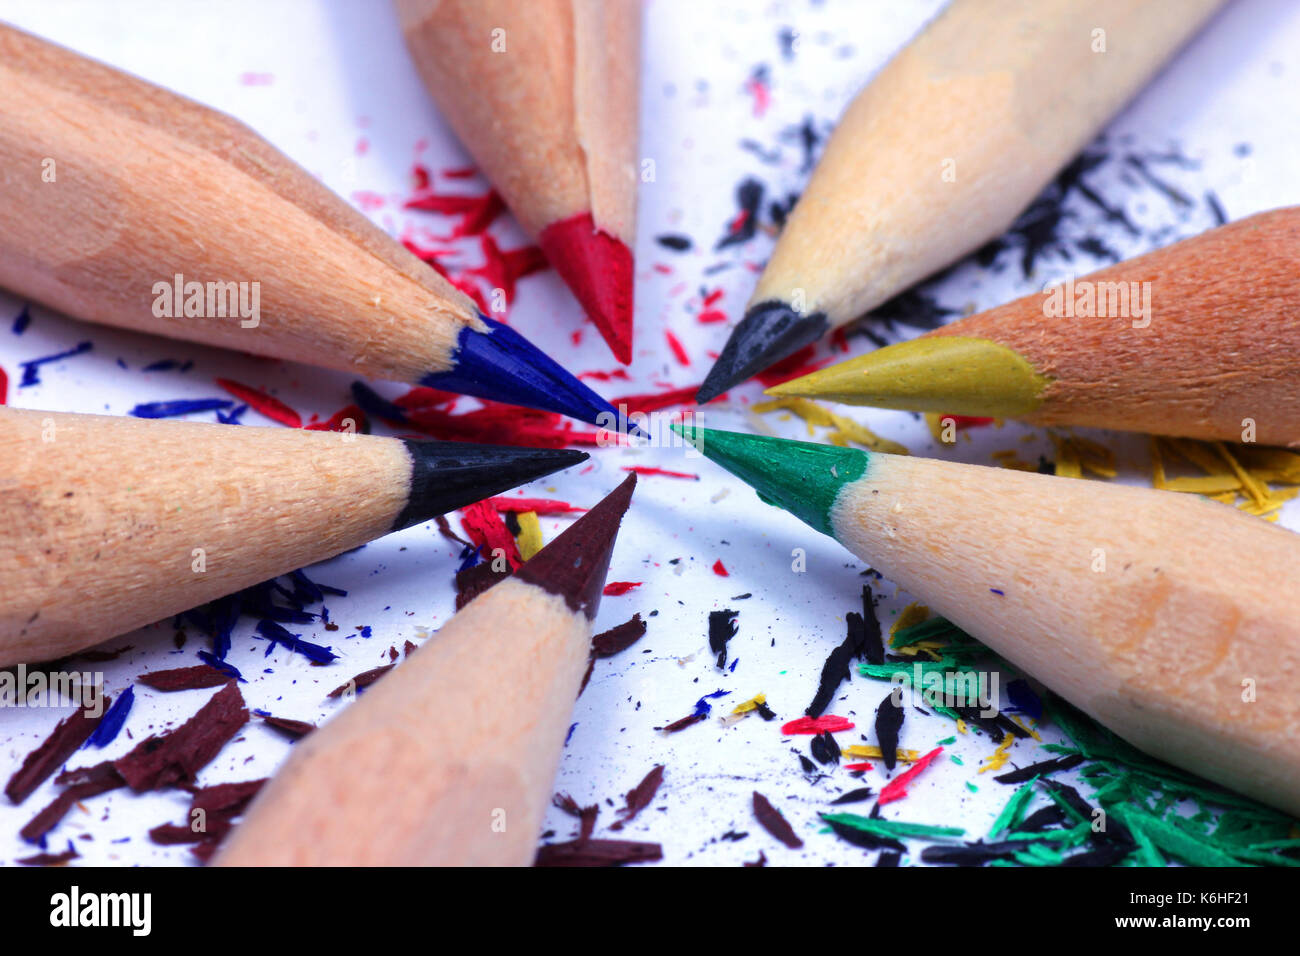 Bleistift spitzen und sein Abfall. Spitzen Bleistift und seine Abfälle  Stockfotografie - Alamy